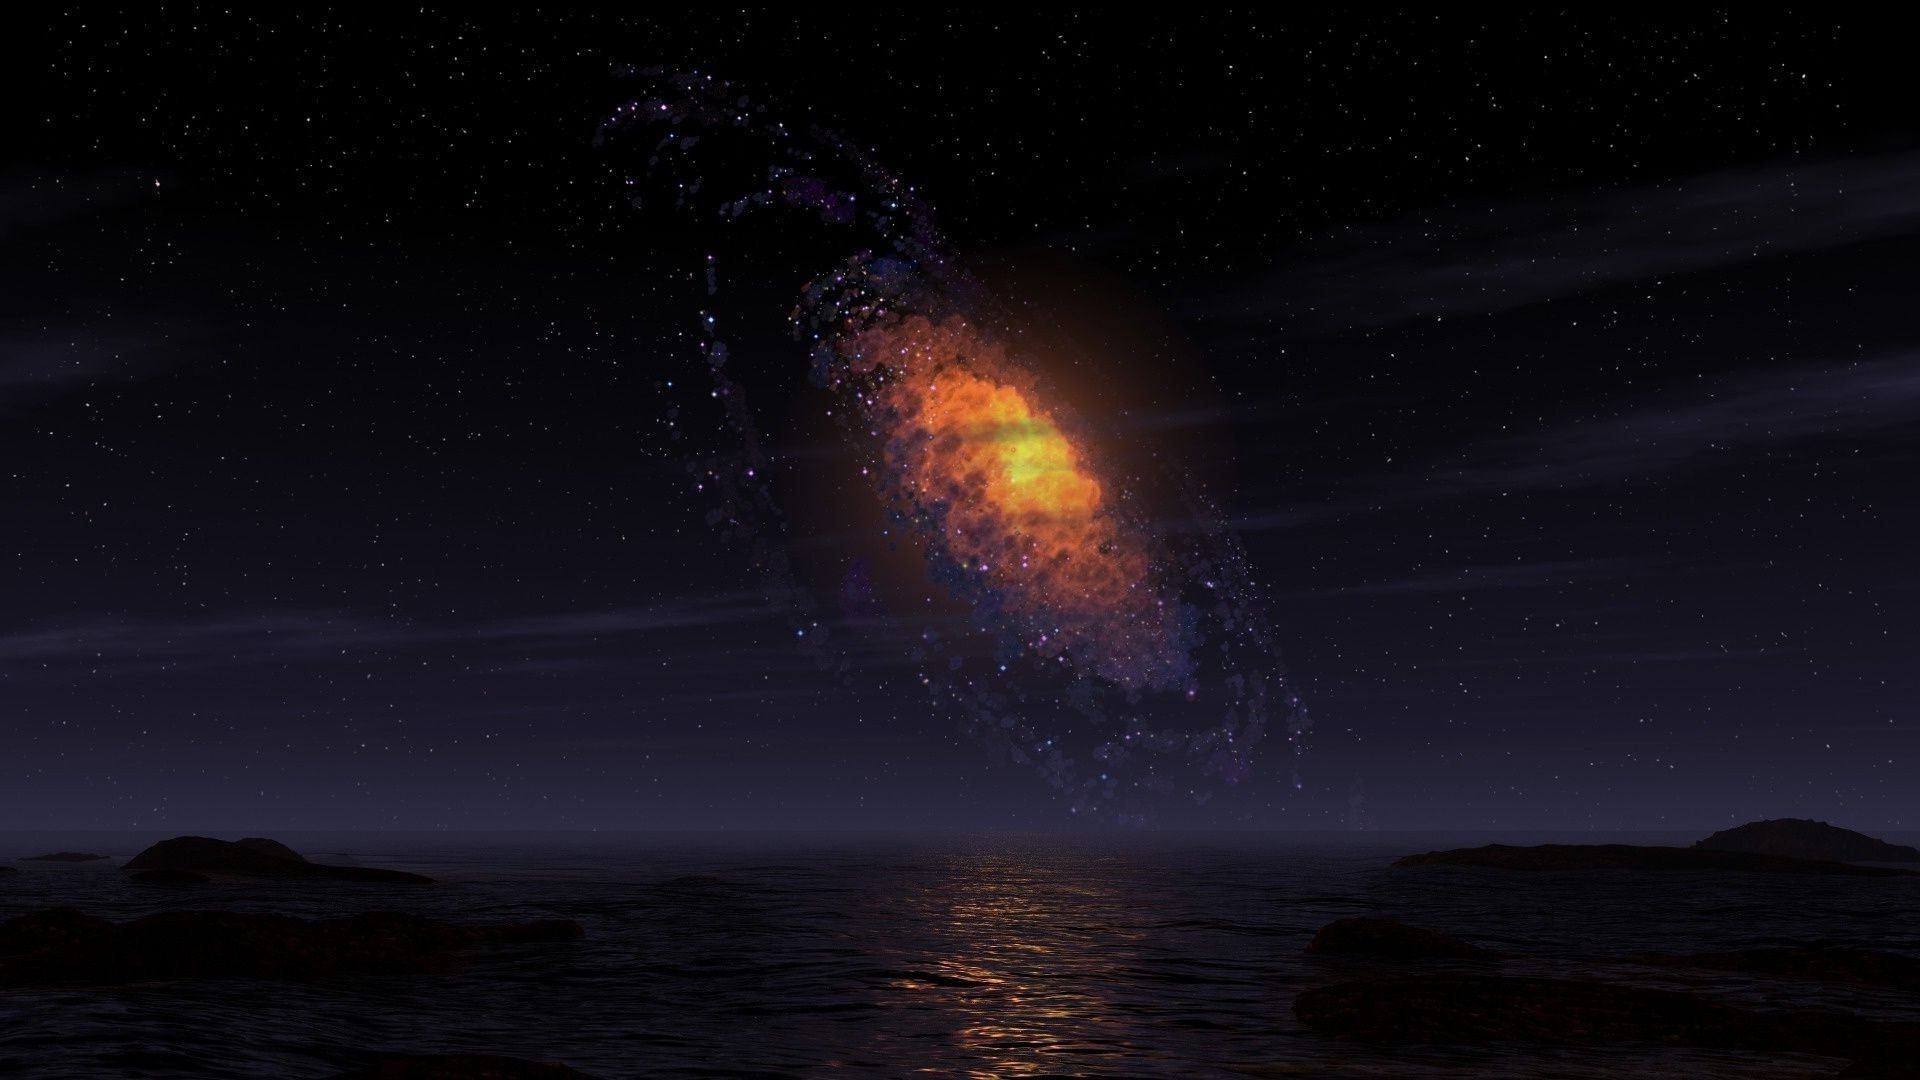 пейзажи астрономия пейзаж луна галактика закат солнце свет небо океан вечером пространство море рассвет